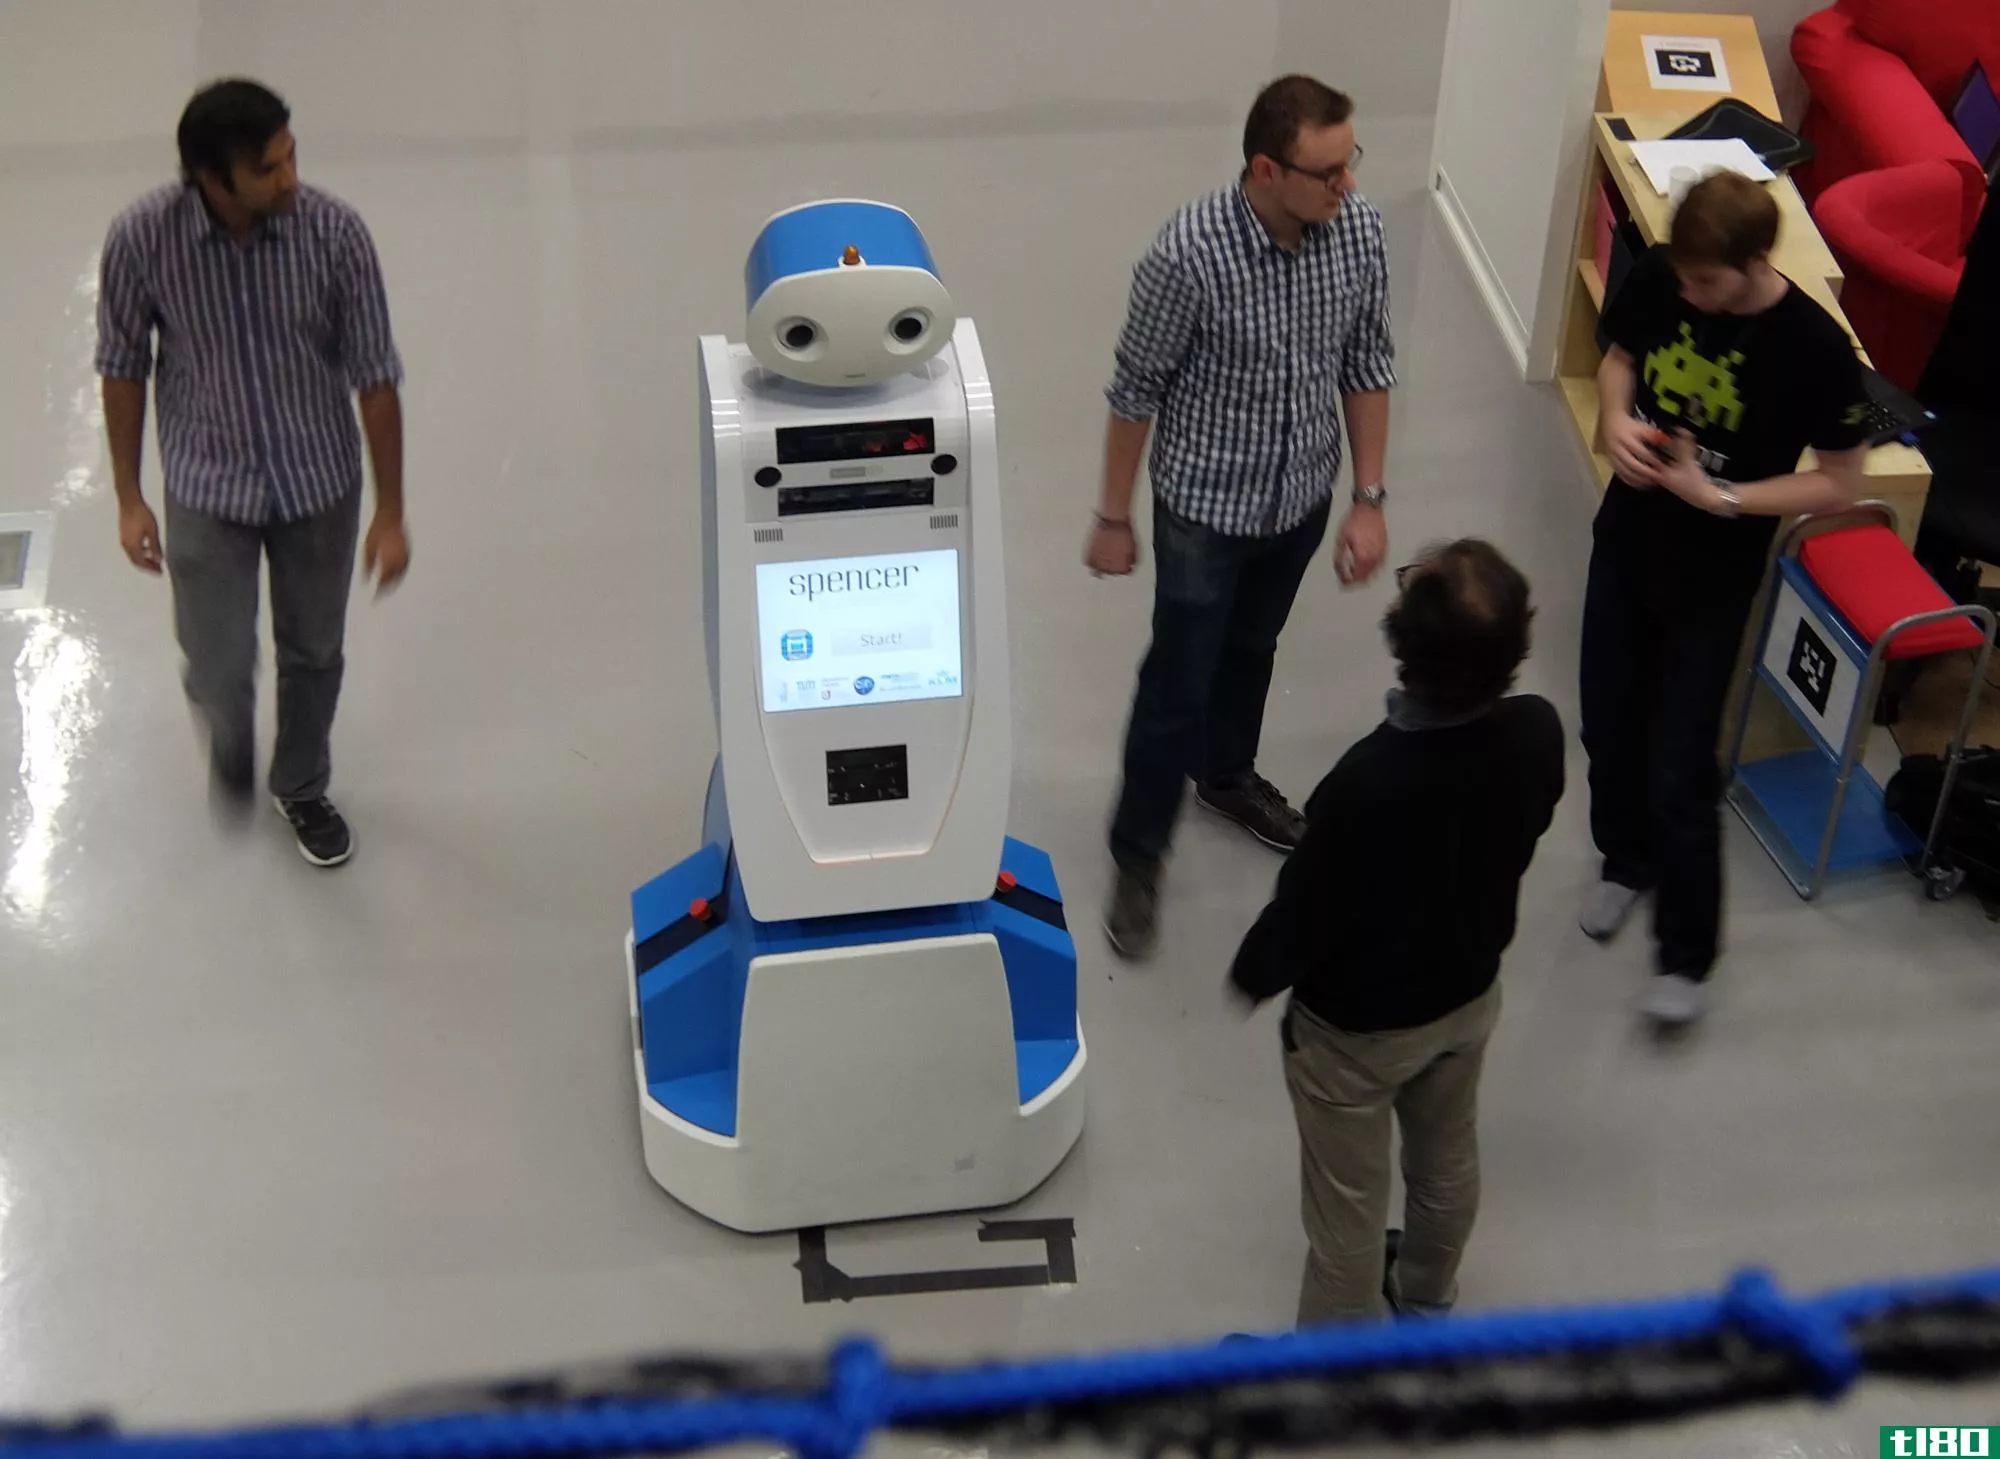 斯宾塞这个机器人下周将引导迷路的乘客通过阿姆斯特丹史基浦机场